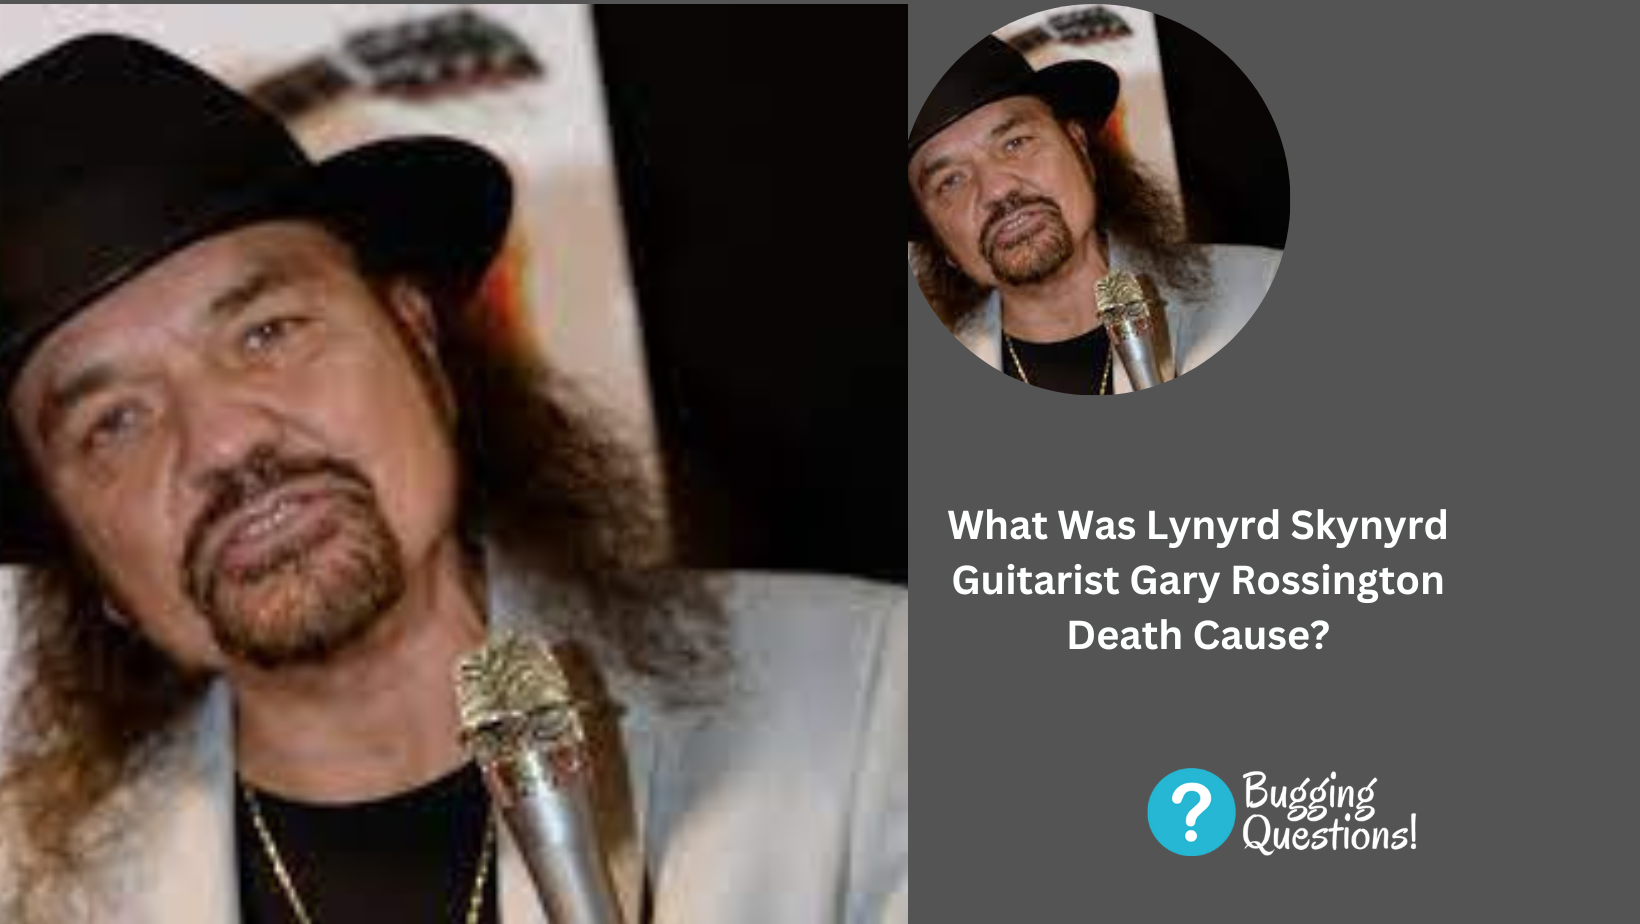 What Was Lynyrd Skynyrd Guitarist Gary Rossington Death Cause?